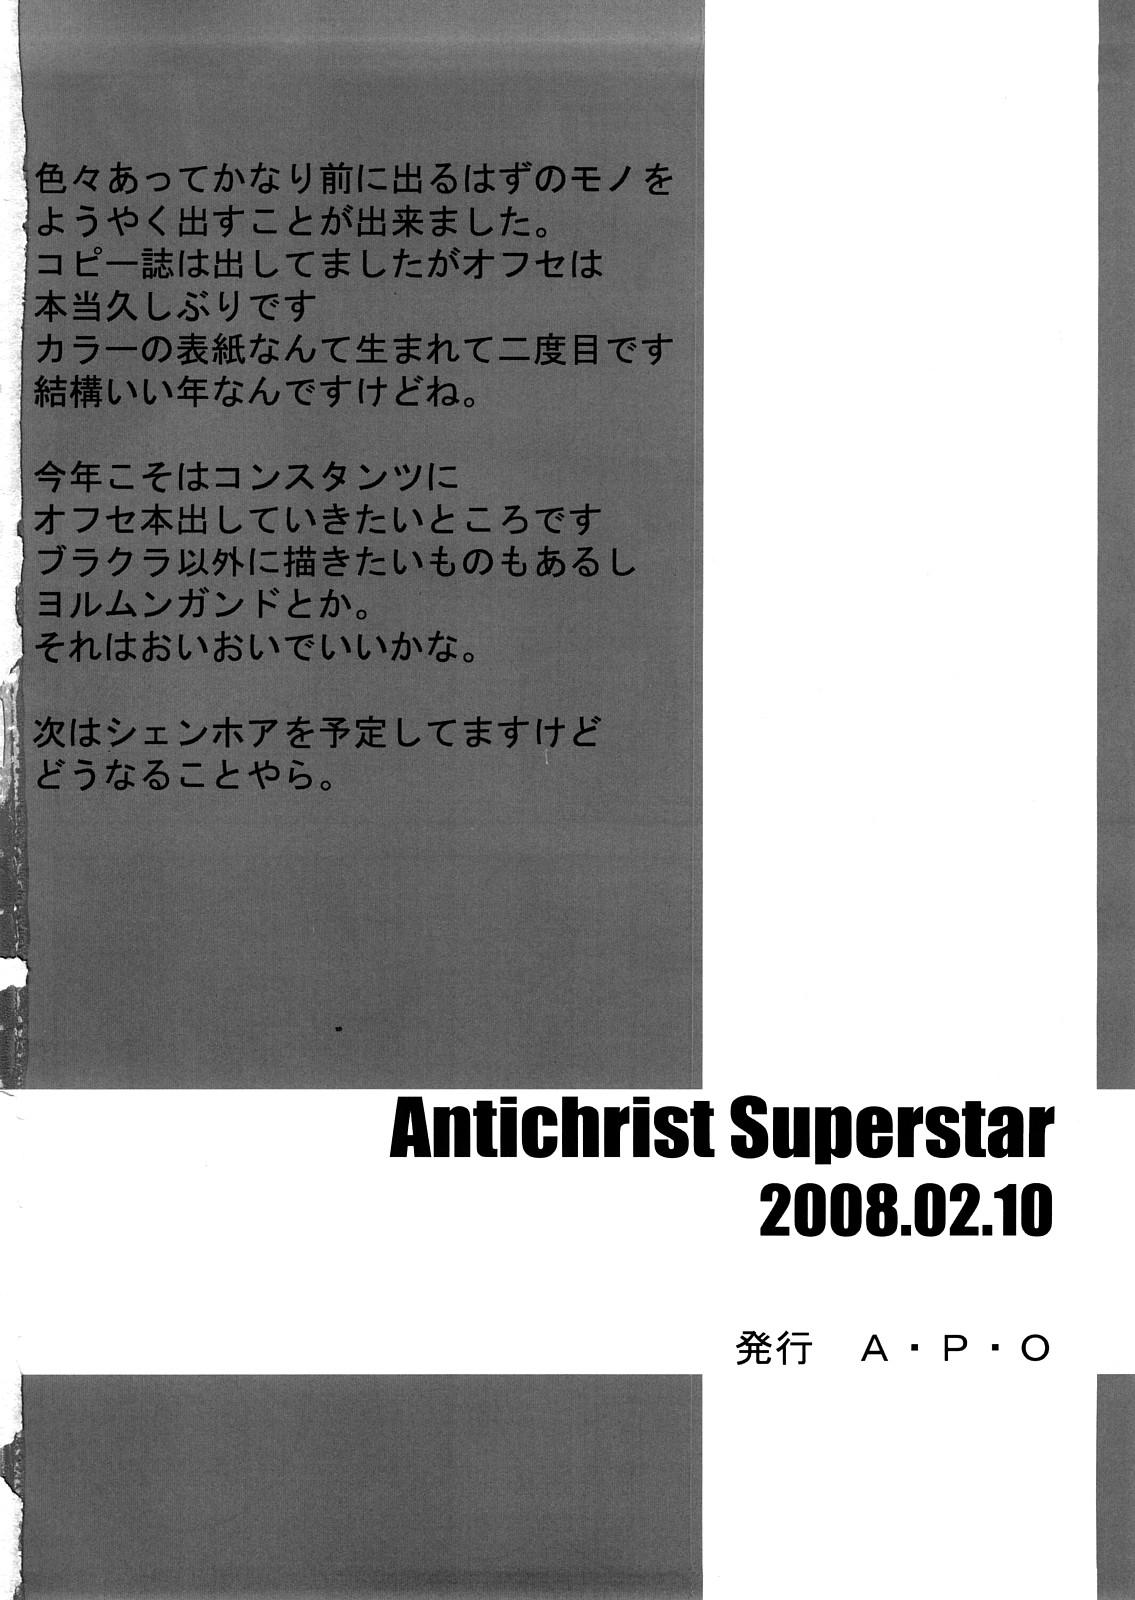 Antichrist Superstar 20